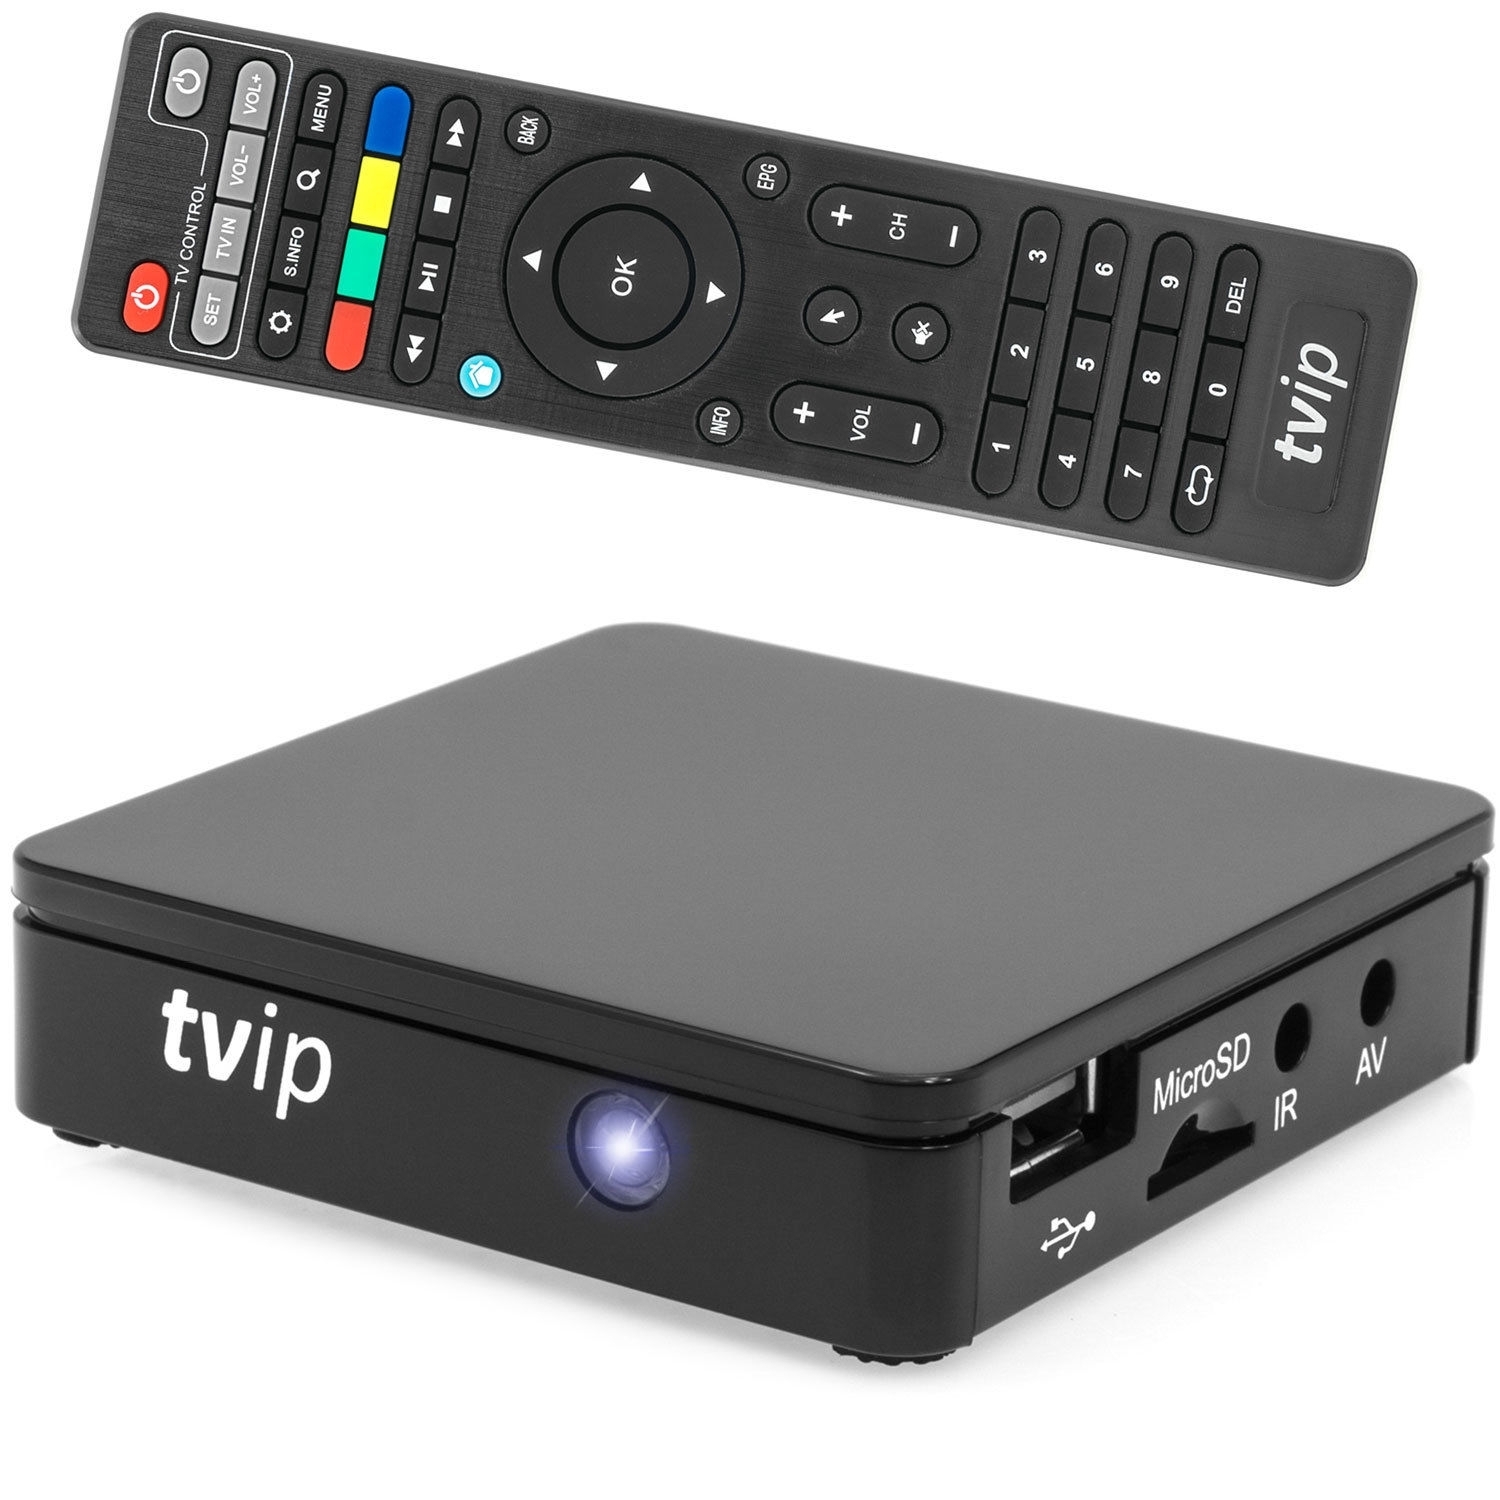 TVIP S-Box v.415 IPTV/OTT Media Player 2.4/5GHz WLAN